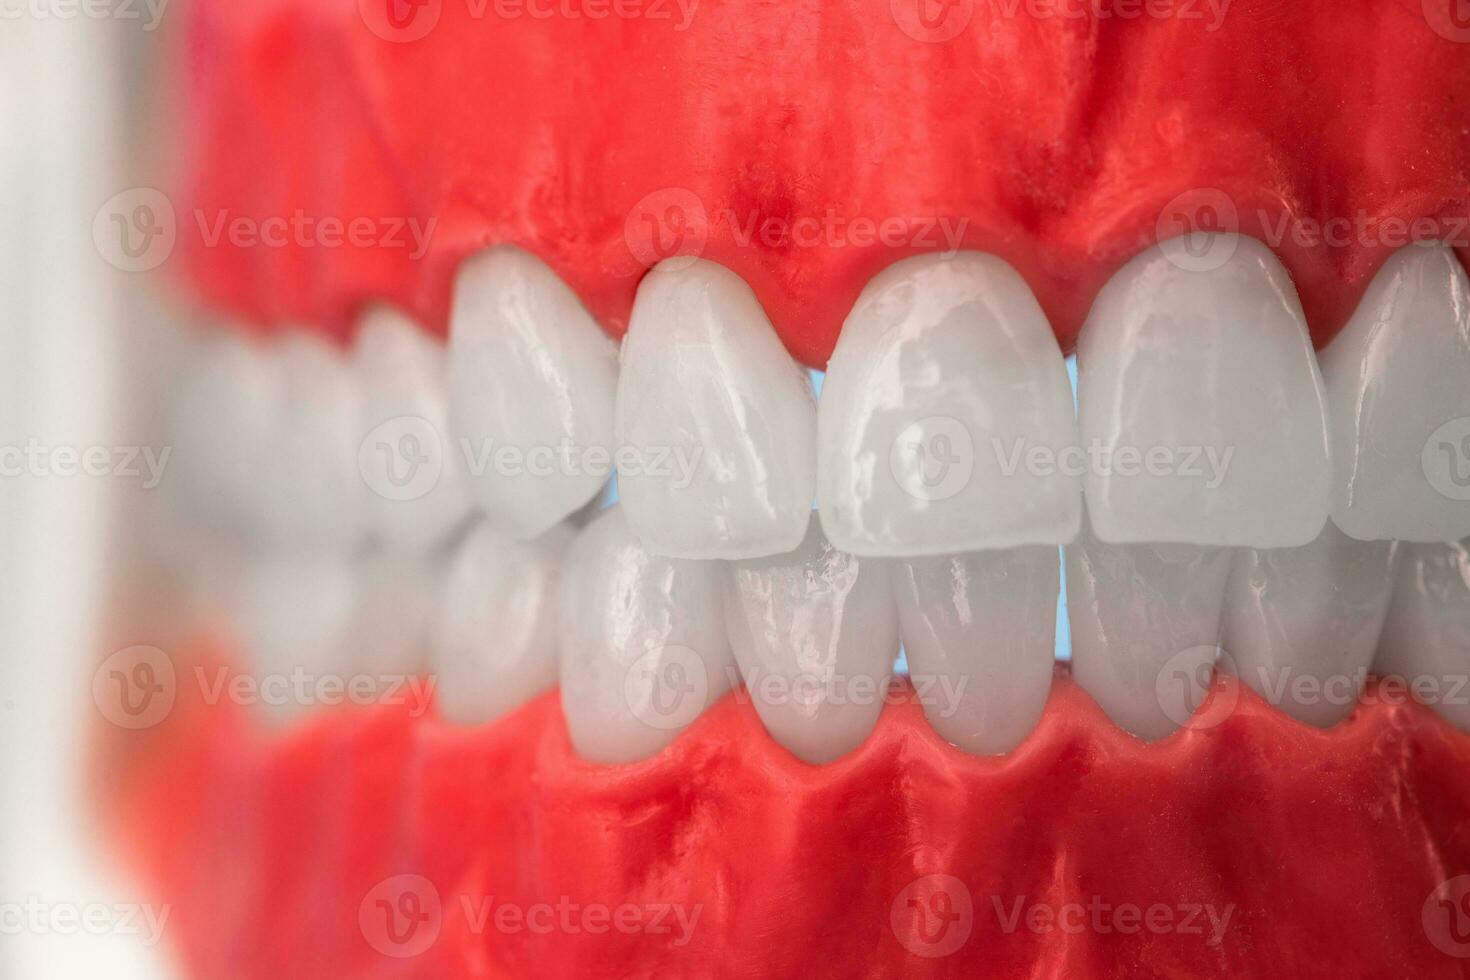 umano mascella con denti e gengive anatomia modello isolato su blu sfondo. salutare denti, dentale cura e ortodontico medico assistenza sanitaria concetto foto